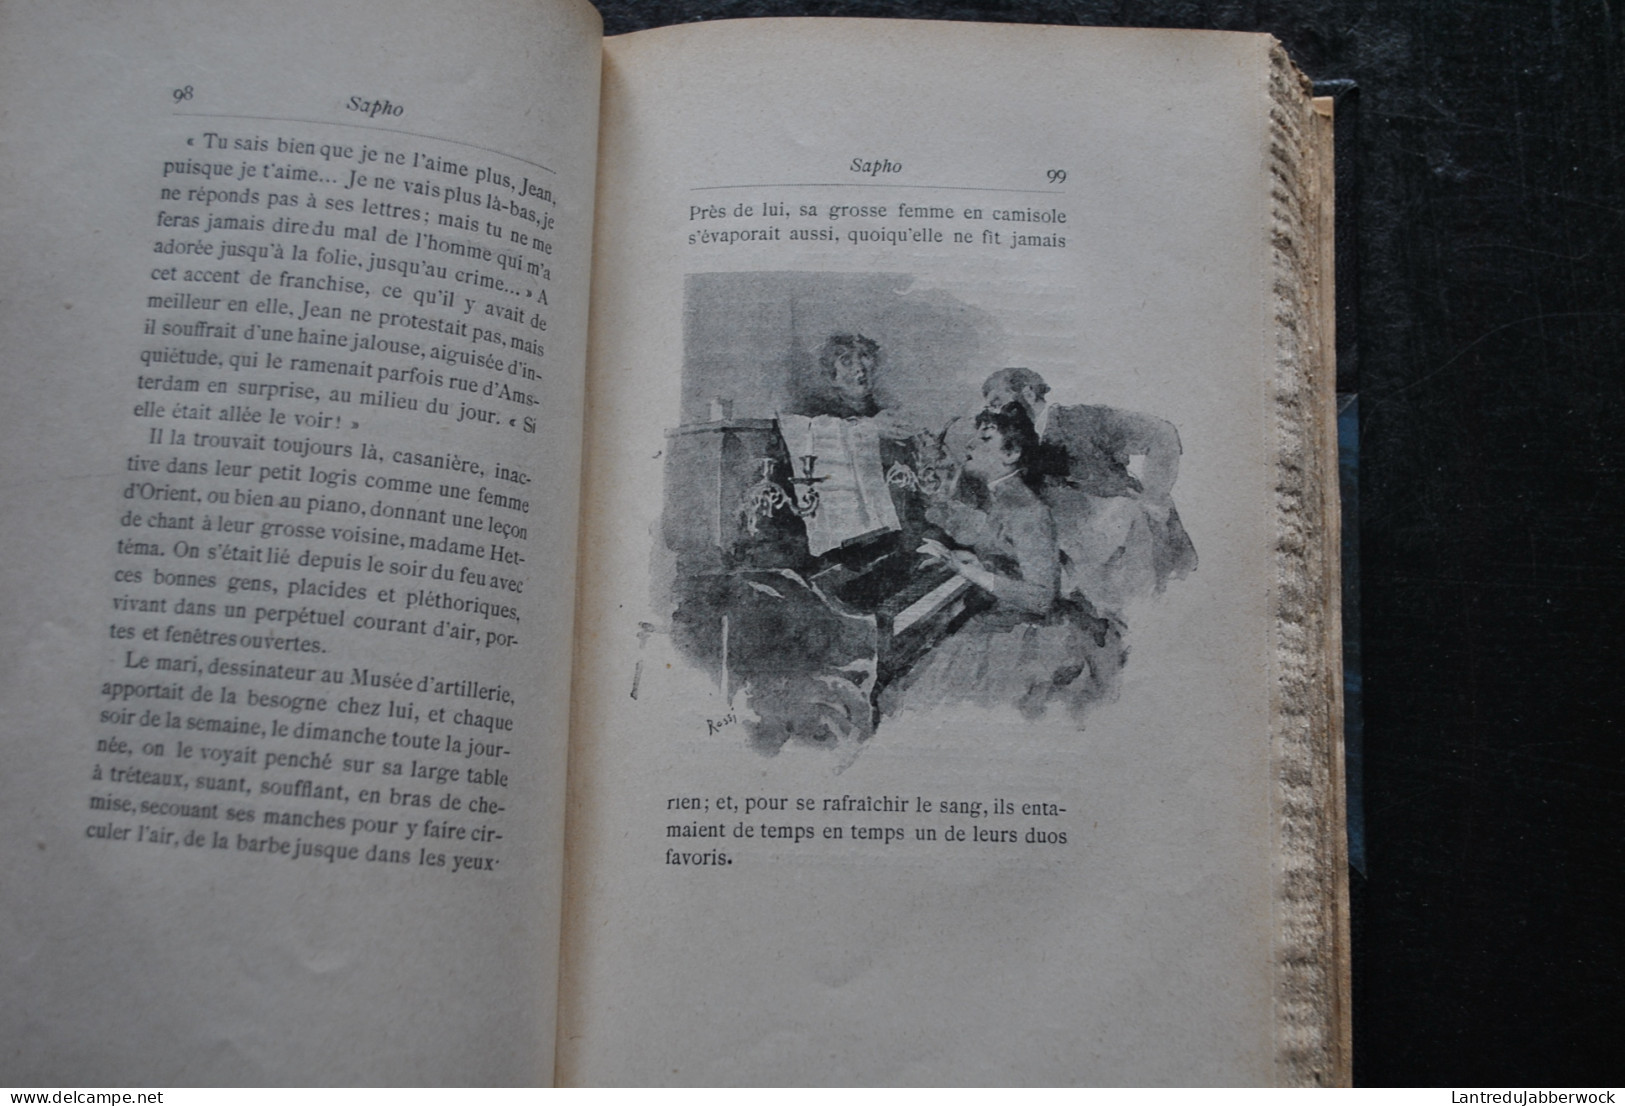 Alphonse DAUDET SAPHO Moeurs parisiennes Illustrations de Rossi Myrbach Ernest Flammarion sd Erotique Reliure cuir